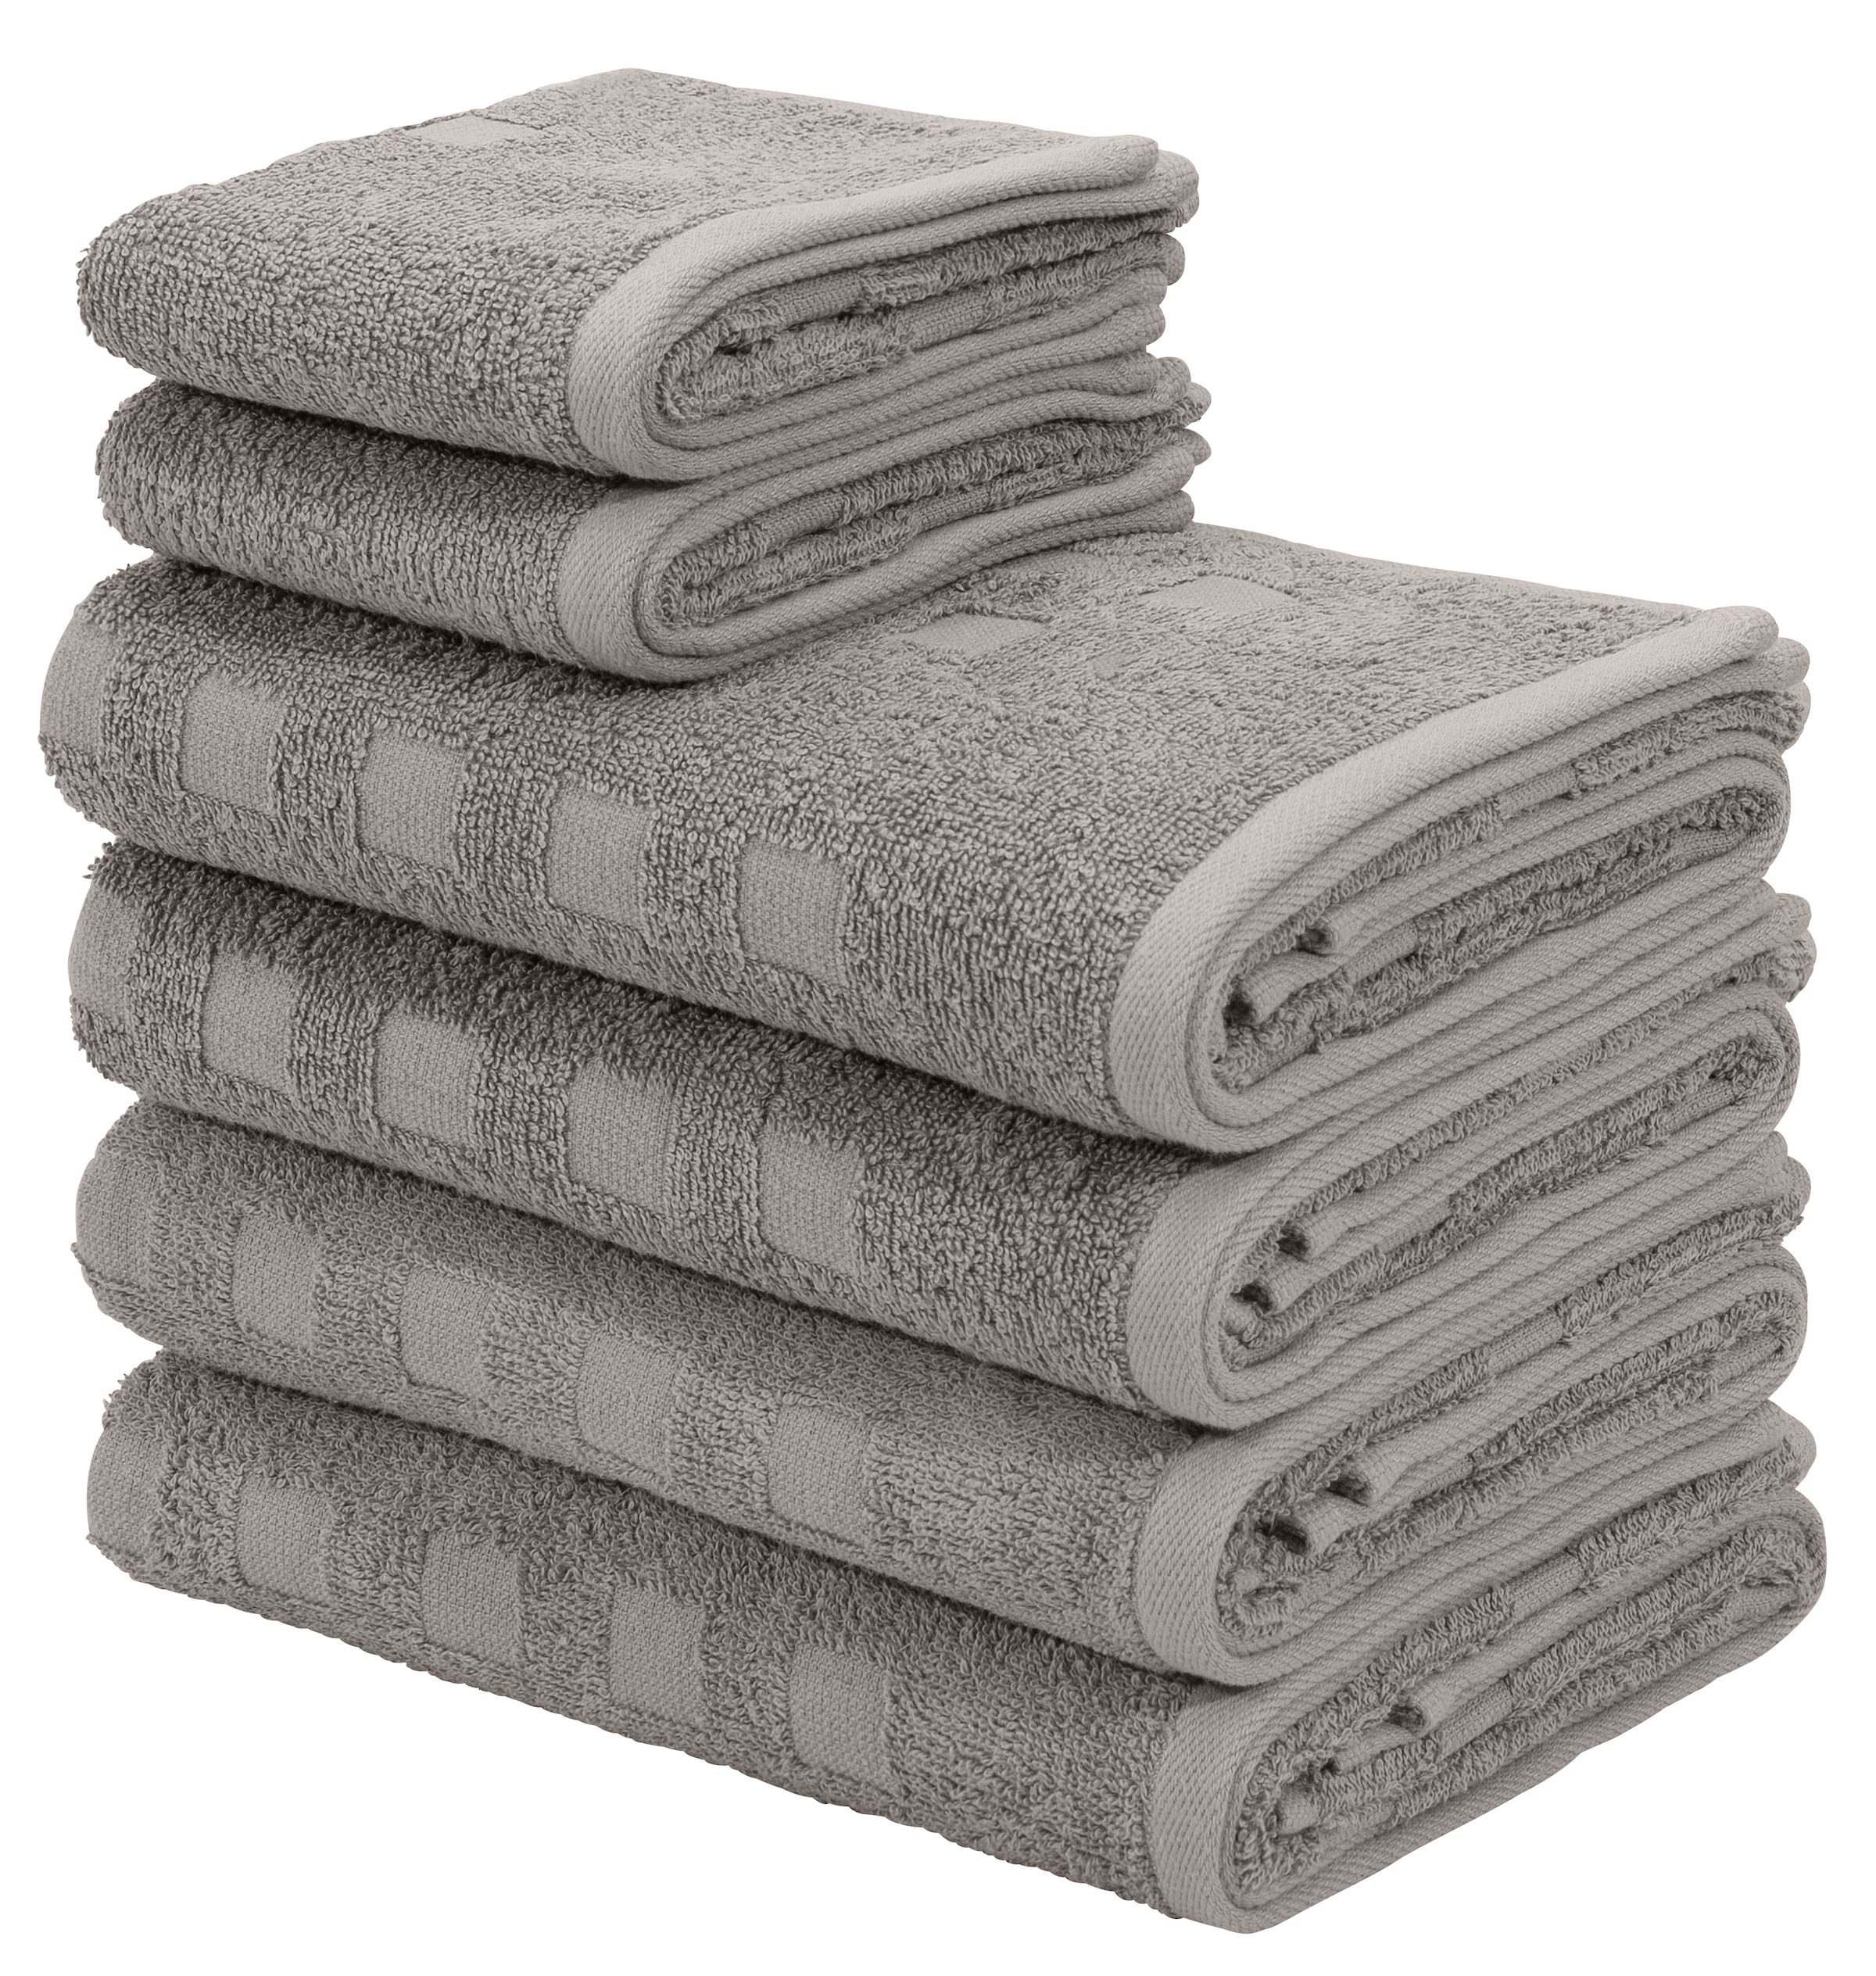 Handtuch-Sets online kaufen bei Quelle Wir – liefern